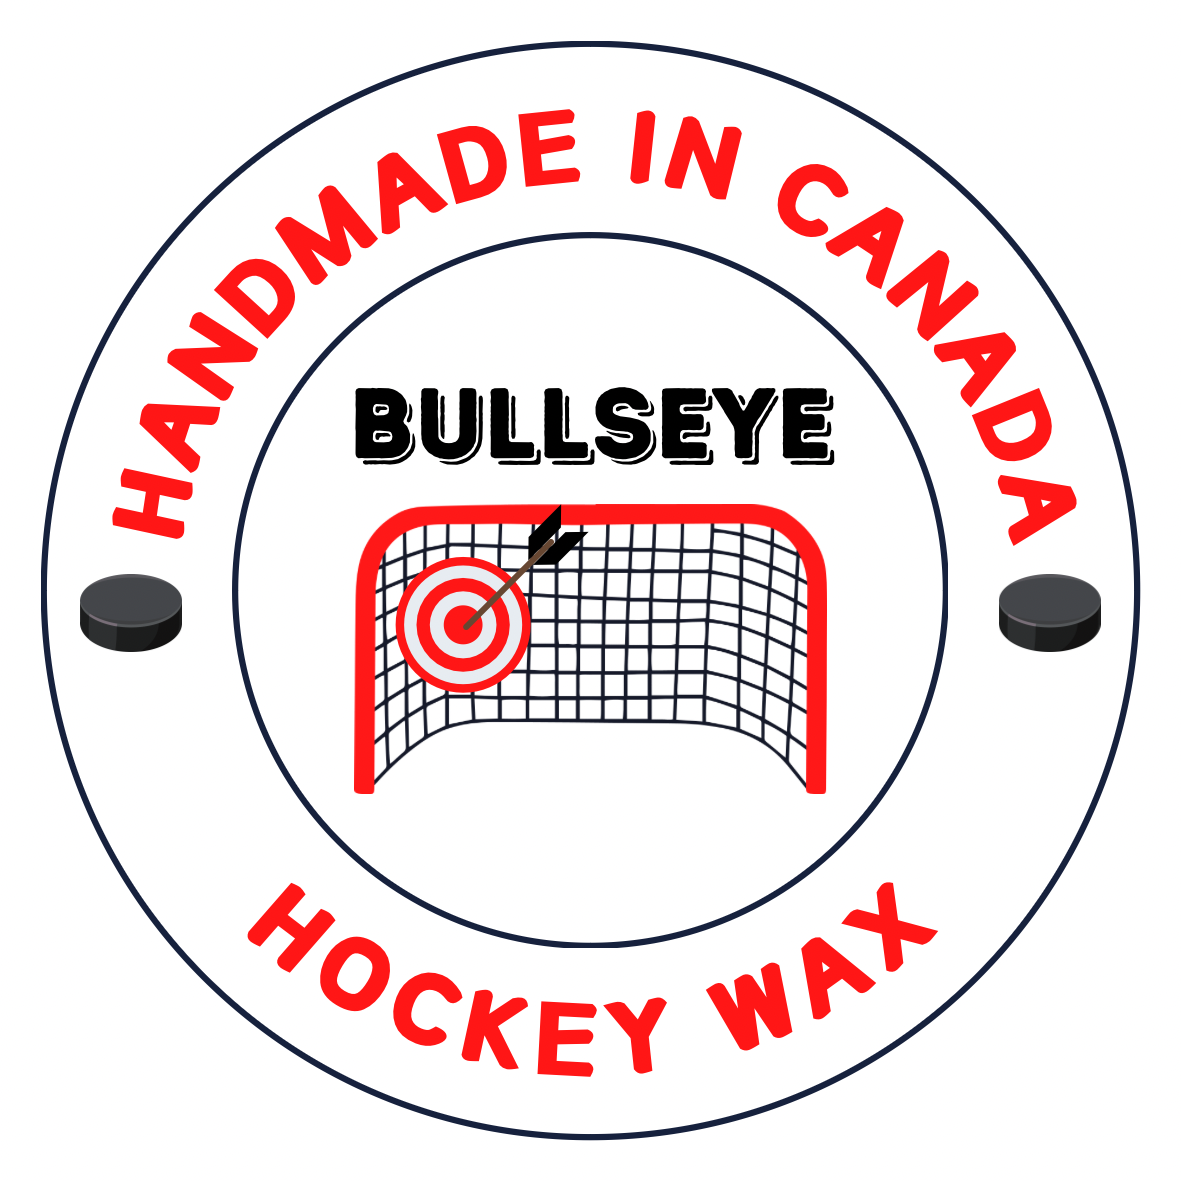 BULLSEYE HOCKEY logo sticker